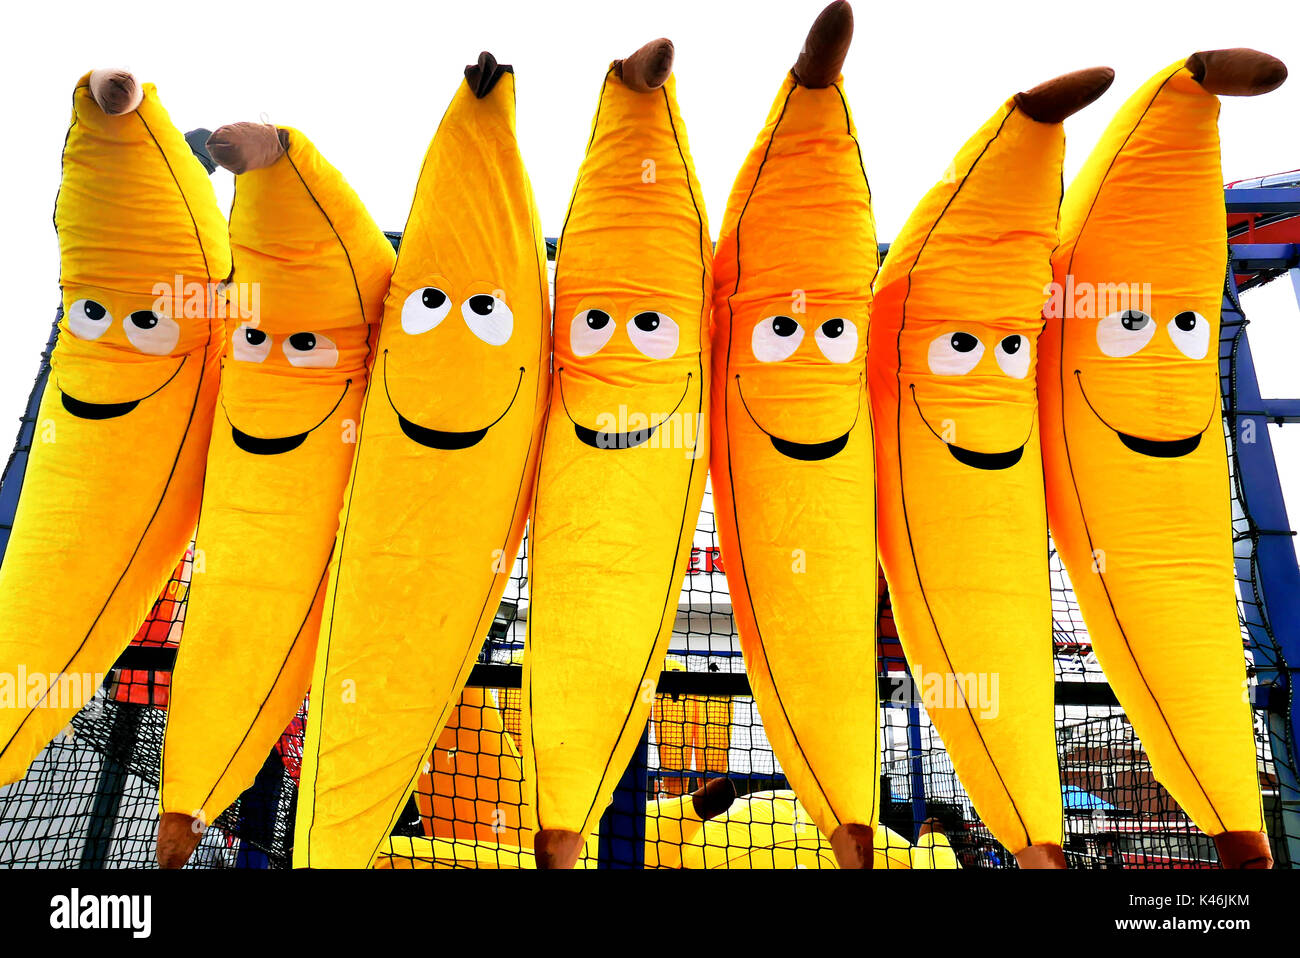 Bananes géantes gonflables avec des visages souriants sur un stand de jouets, Blackpool Pleasure Beach Banque D'Images